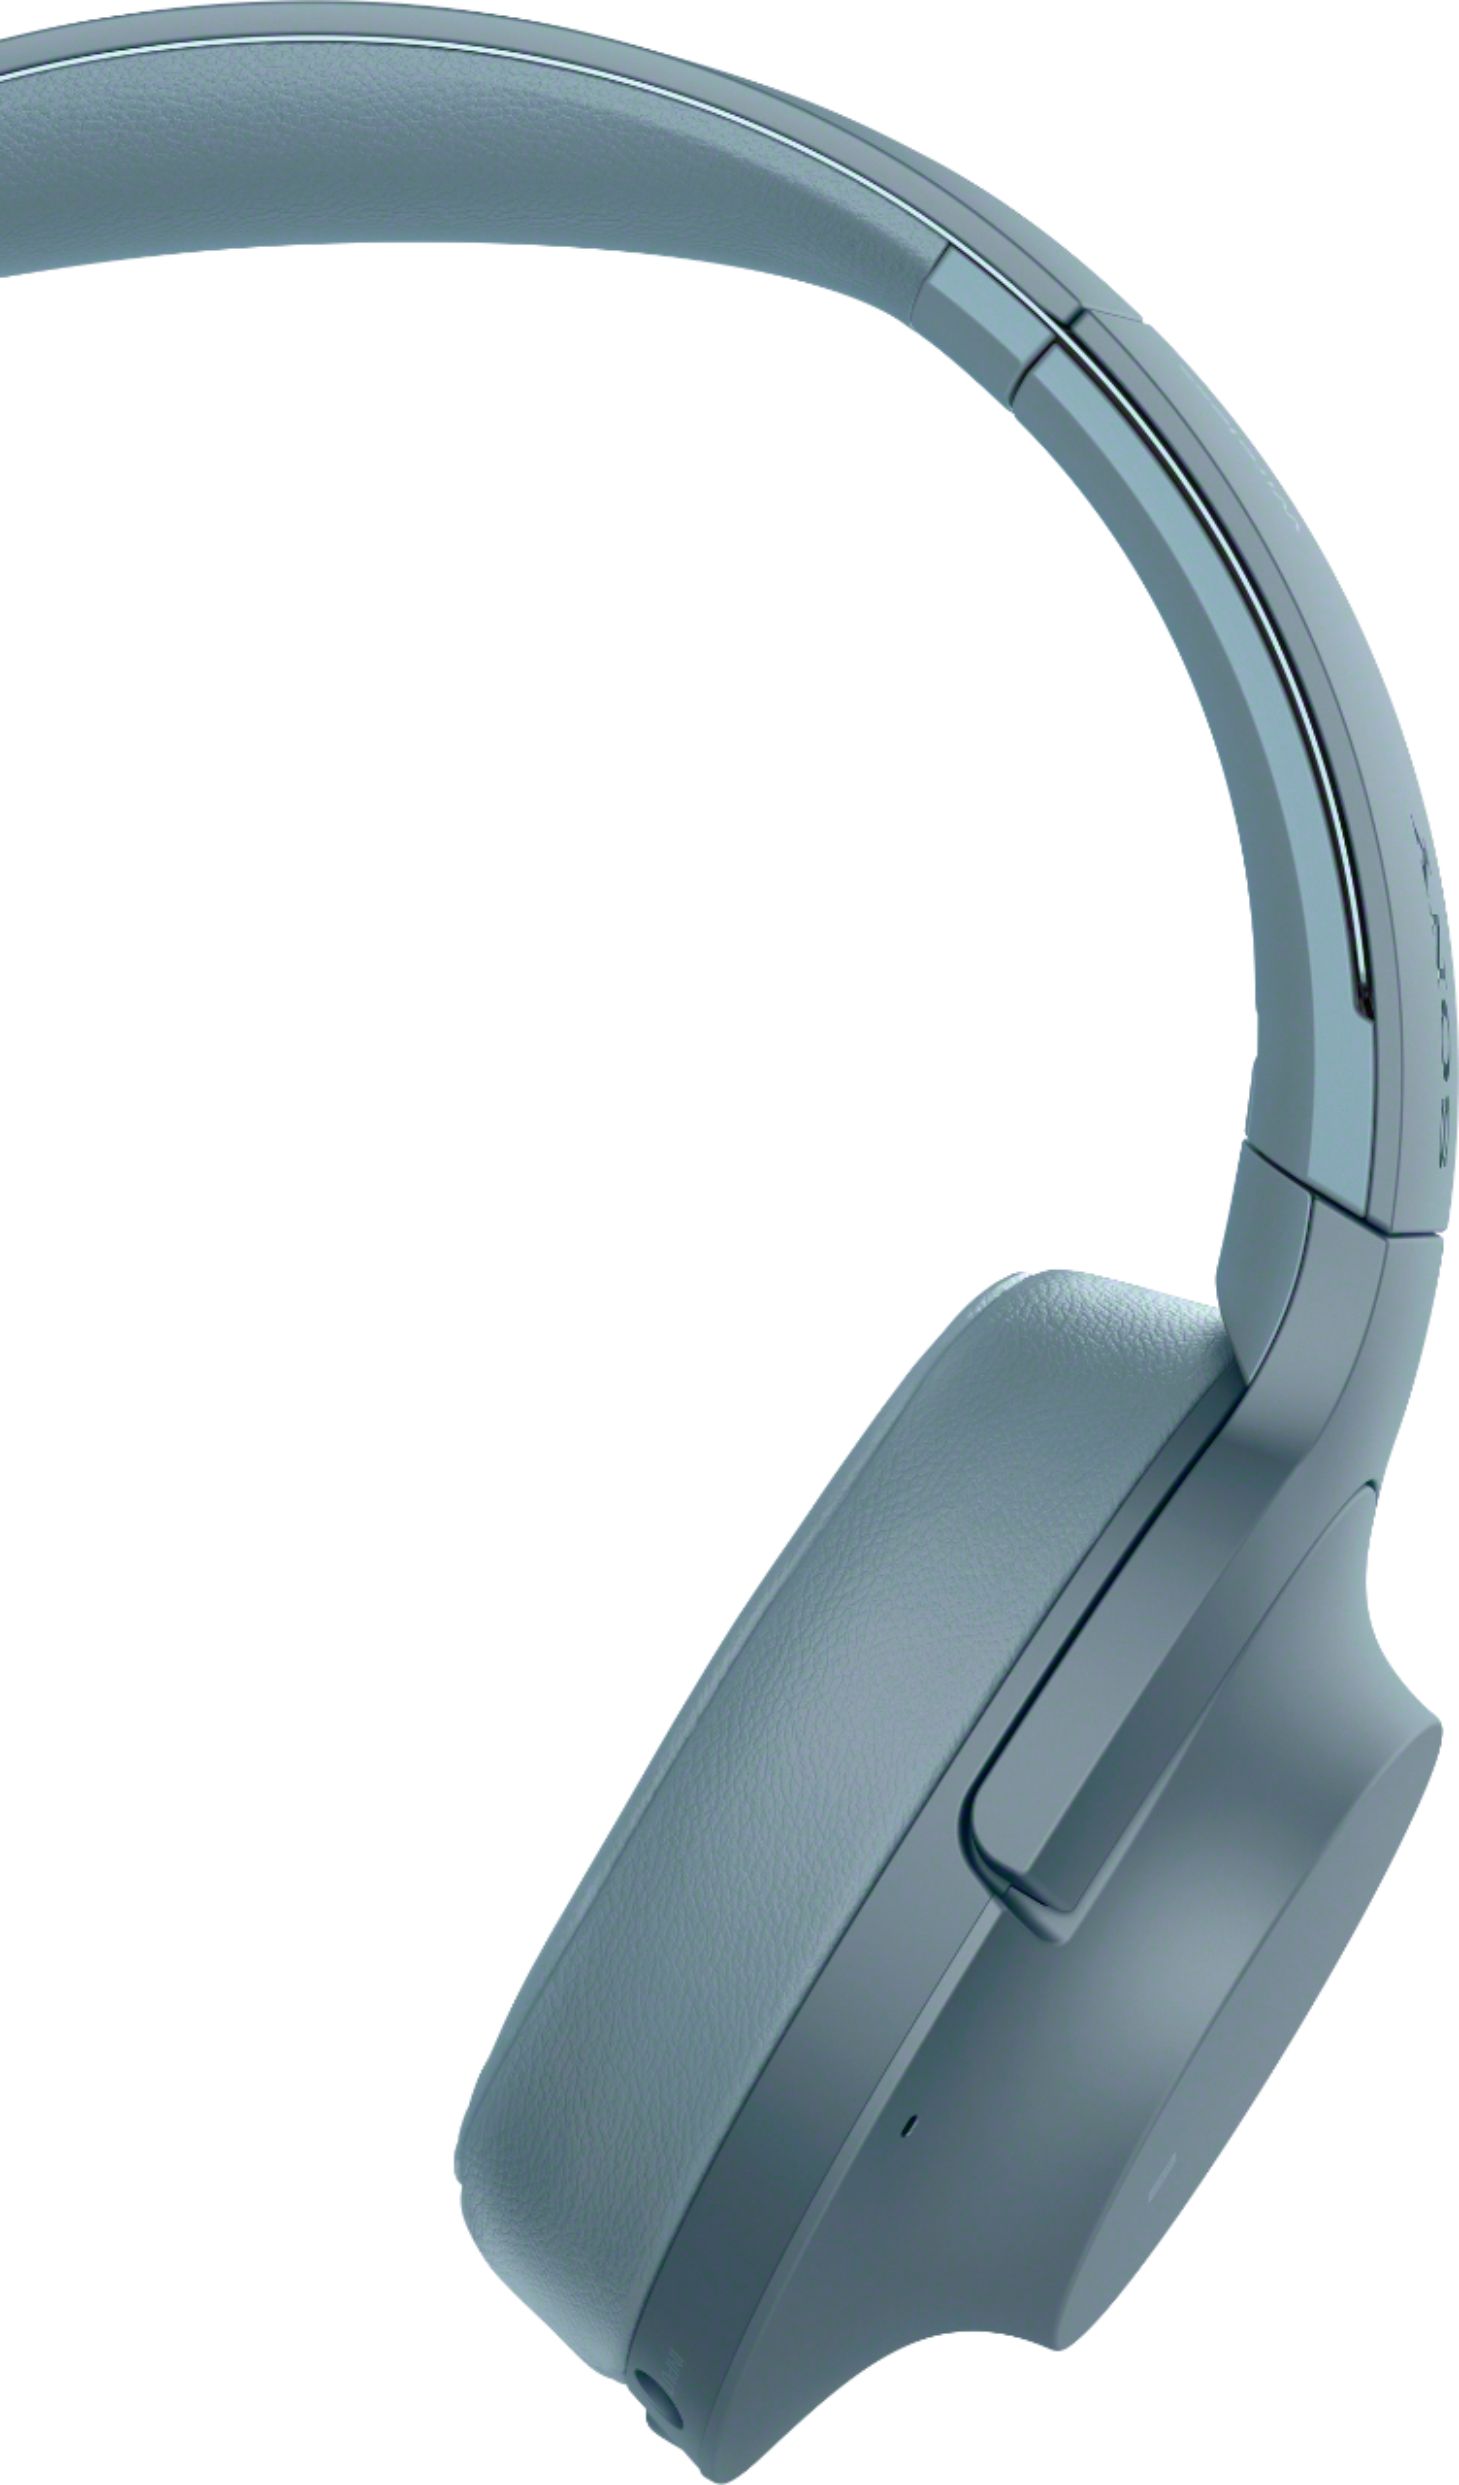 Sony H900N Hi-Res Wireless Noise Cancelling Headphones Black WHH900N/B -  Best Buy